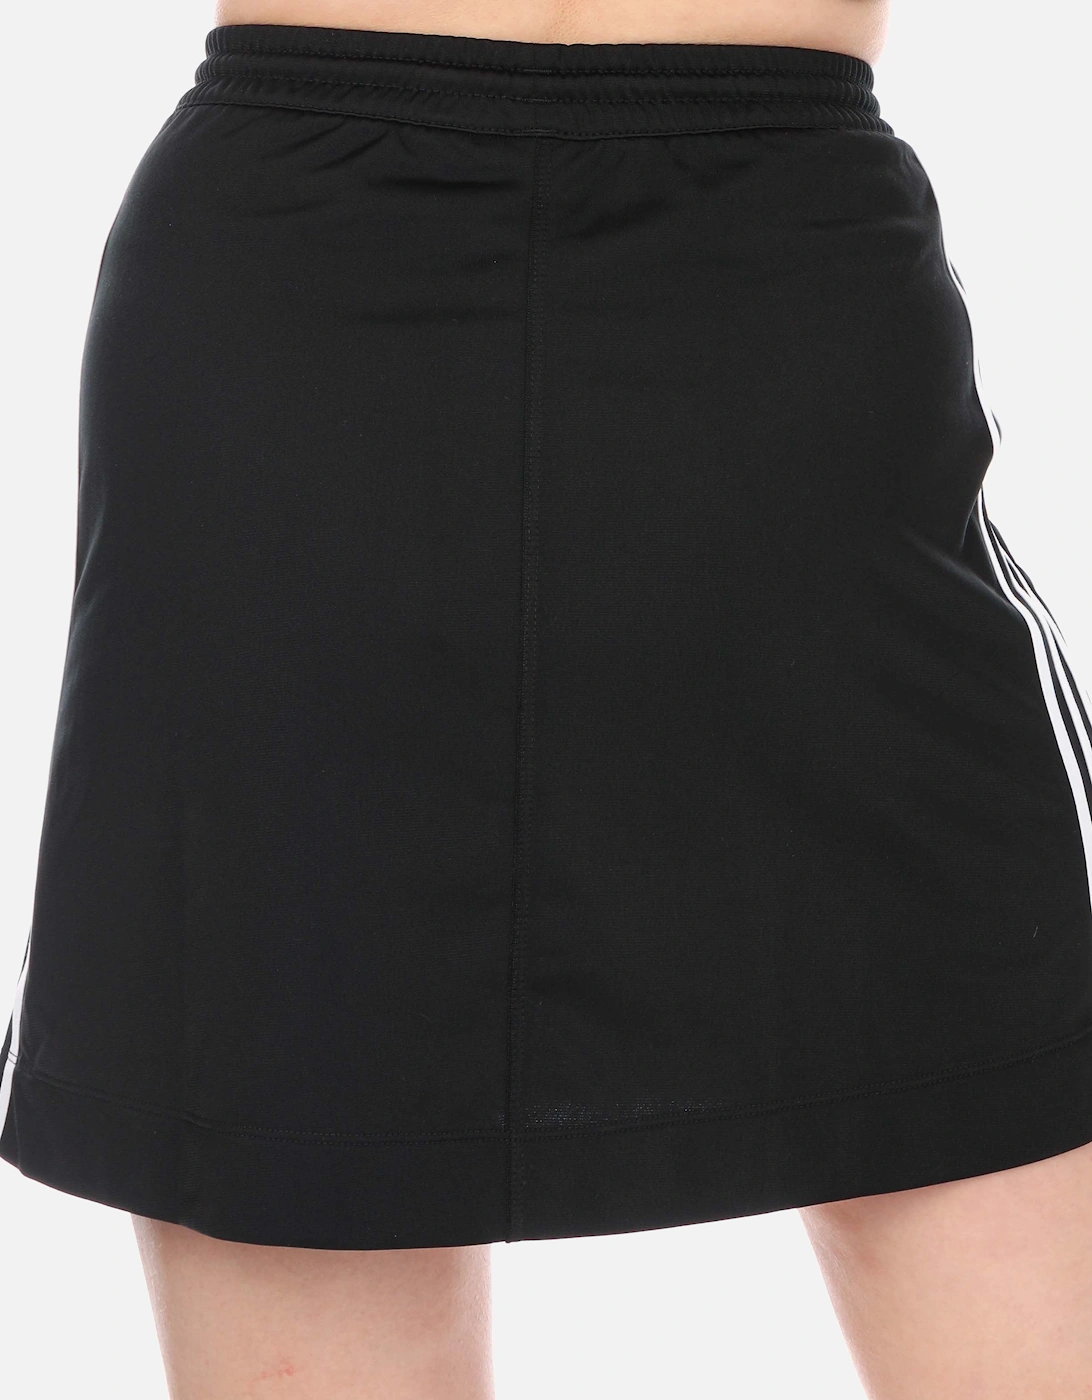 Originals Adicolor Classics Tricot Skirt